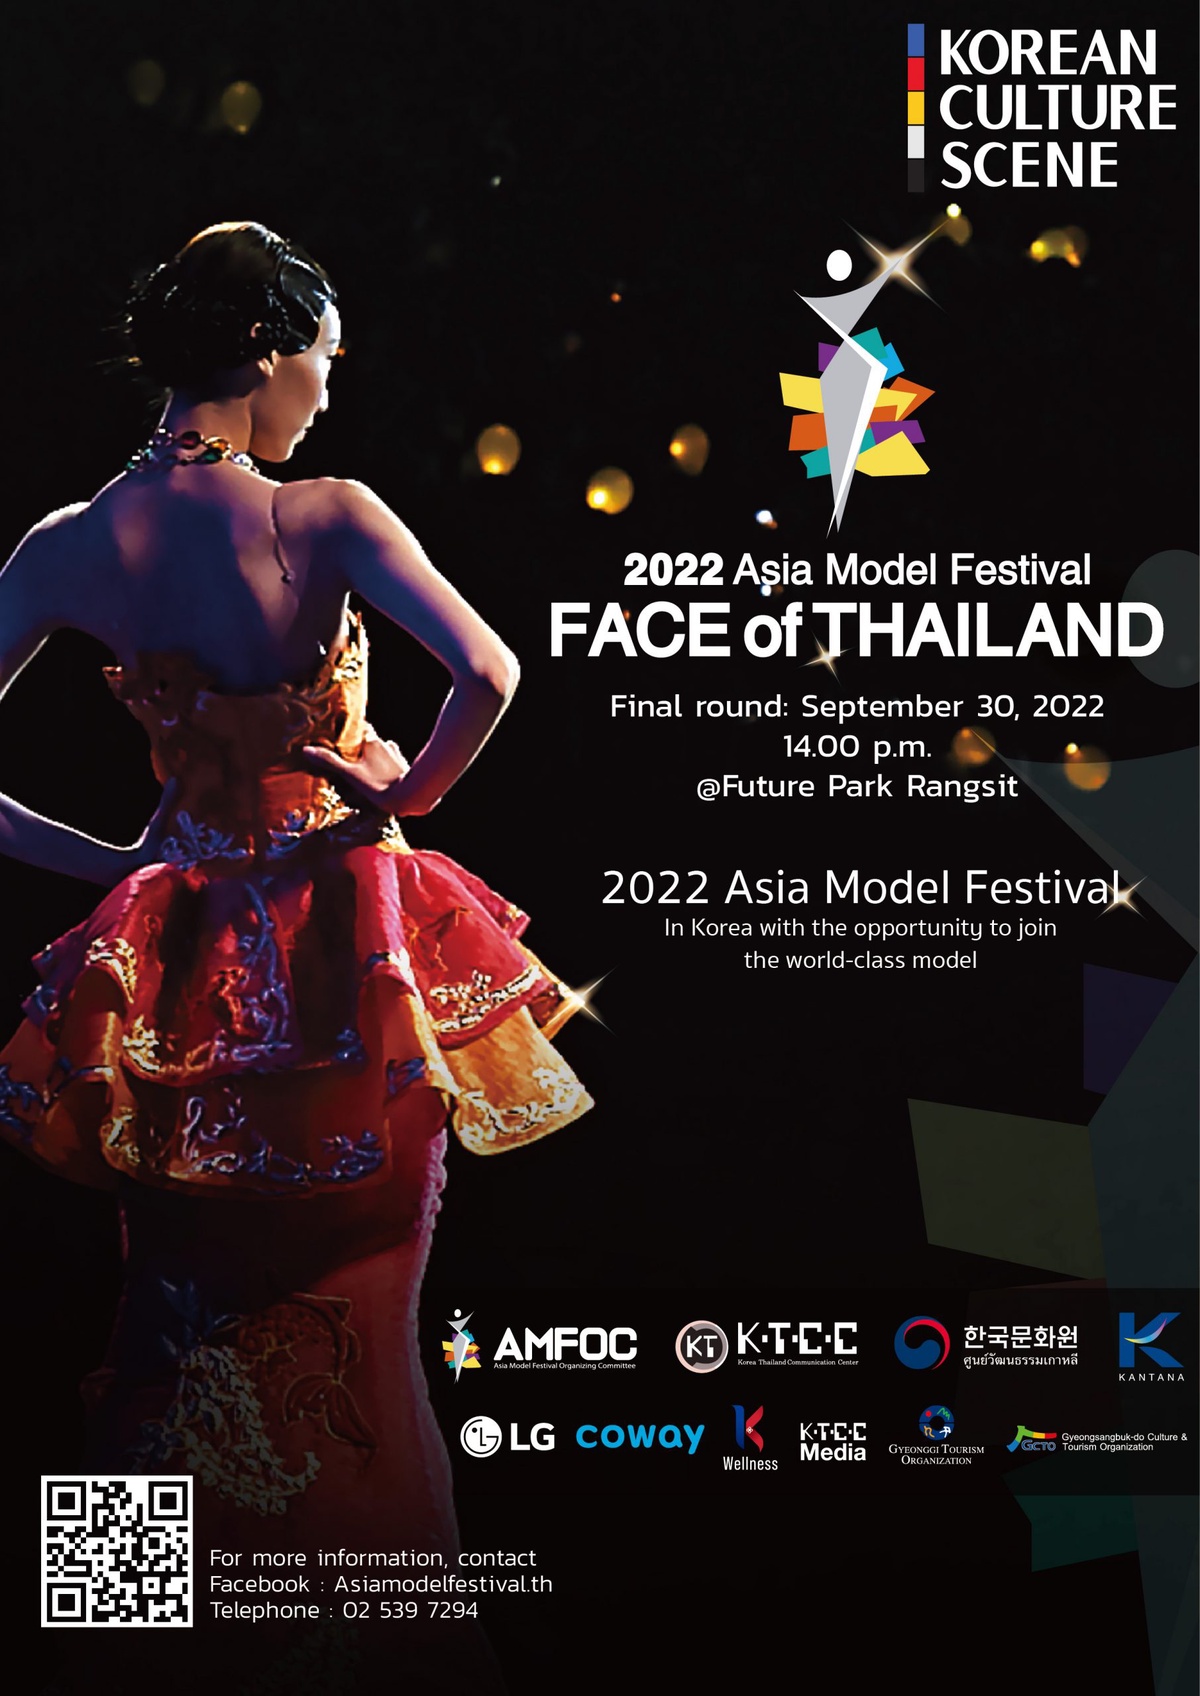 เตรียมพบกับการประกวดรอบชิงชนะเลิศ เพื่อเฟ้นหาสุดยอดนางแบบที่ยอดเยี่ยมที่สุดในเอเชีย 2022 Asia Model Festival FACE OF